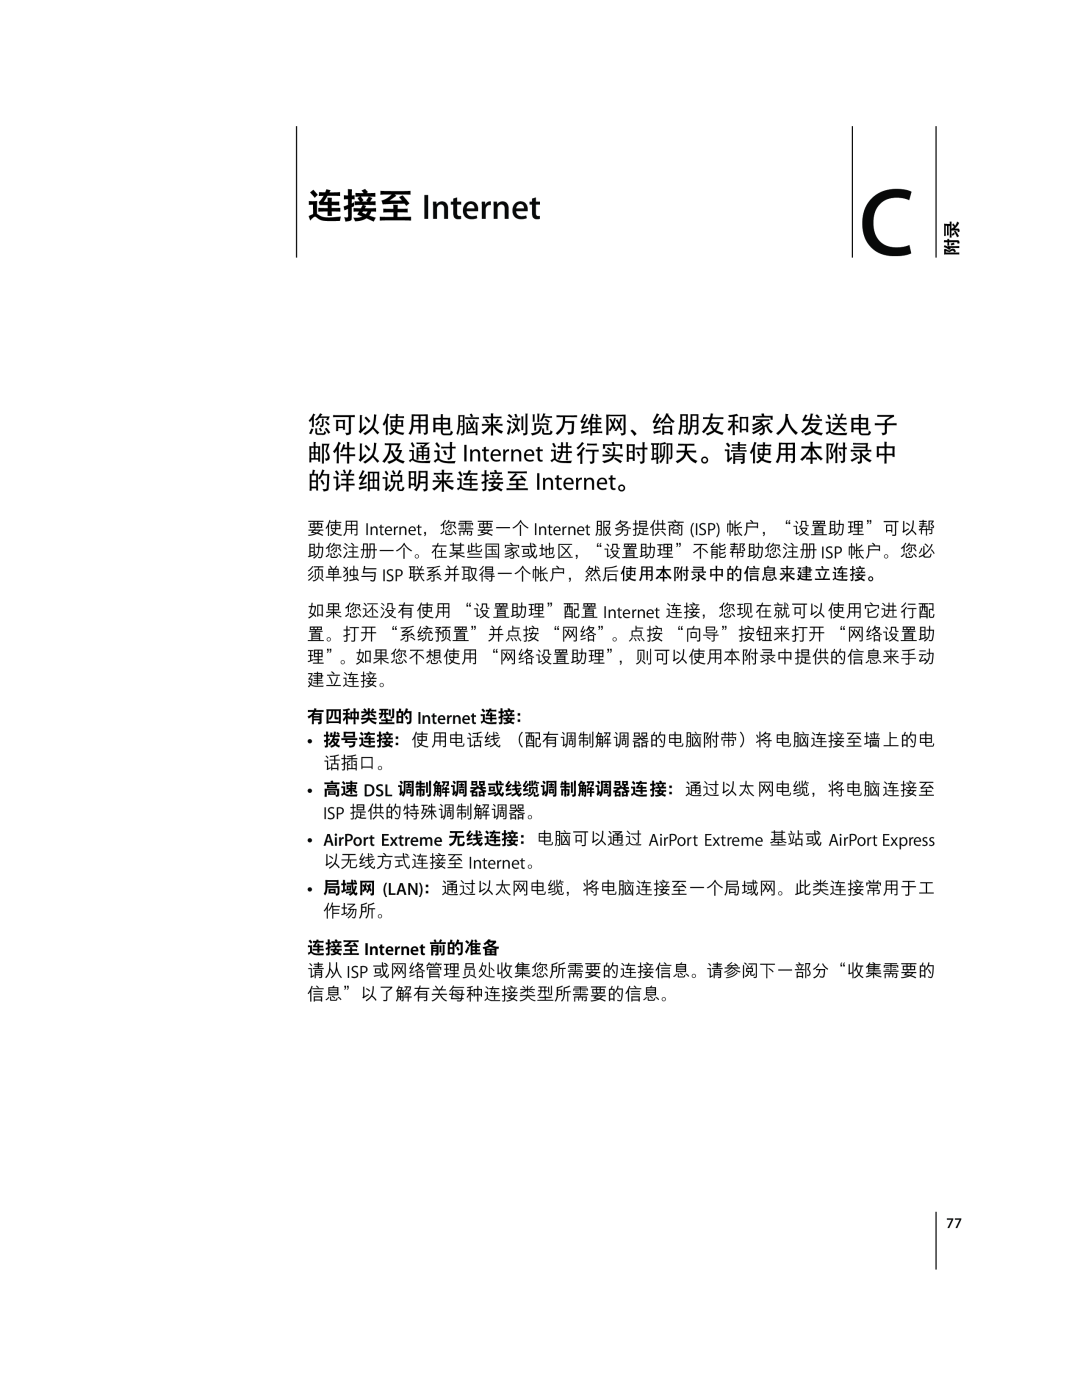 Apple G4 12 manual ŽKLxË qŽ” Internet ‚ƒ¾KL!· Þß¹ºhiw Internet, eDEF‡- Internet, Internet · 